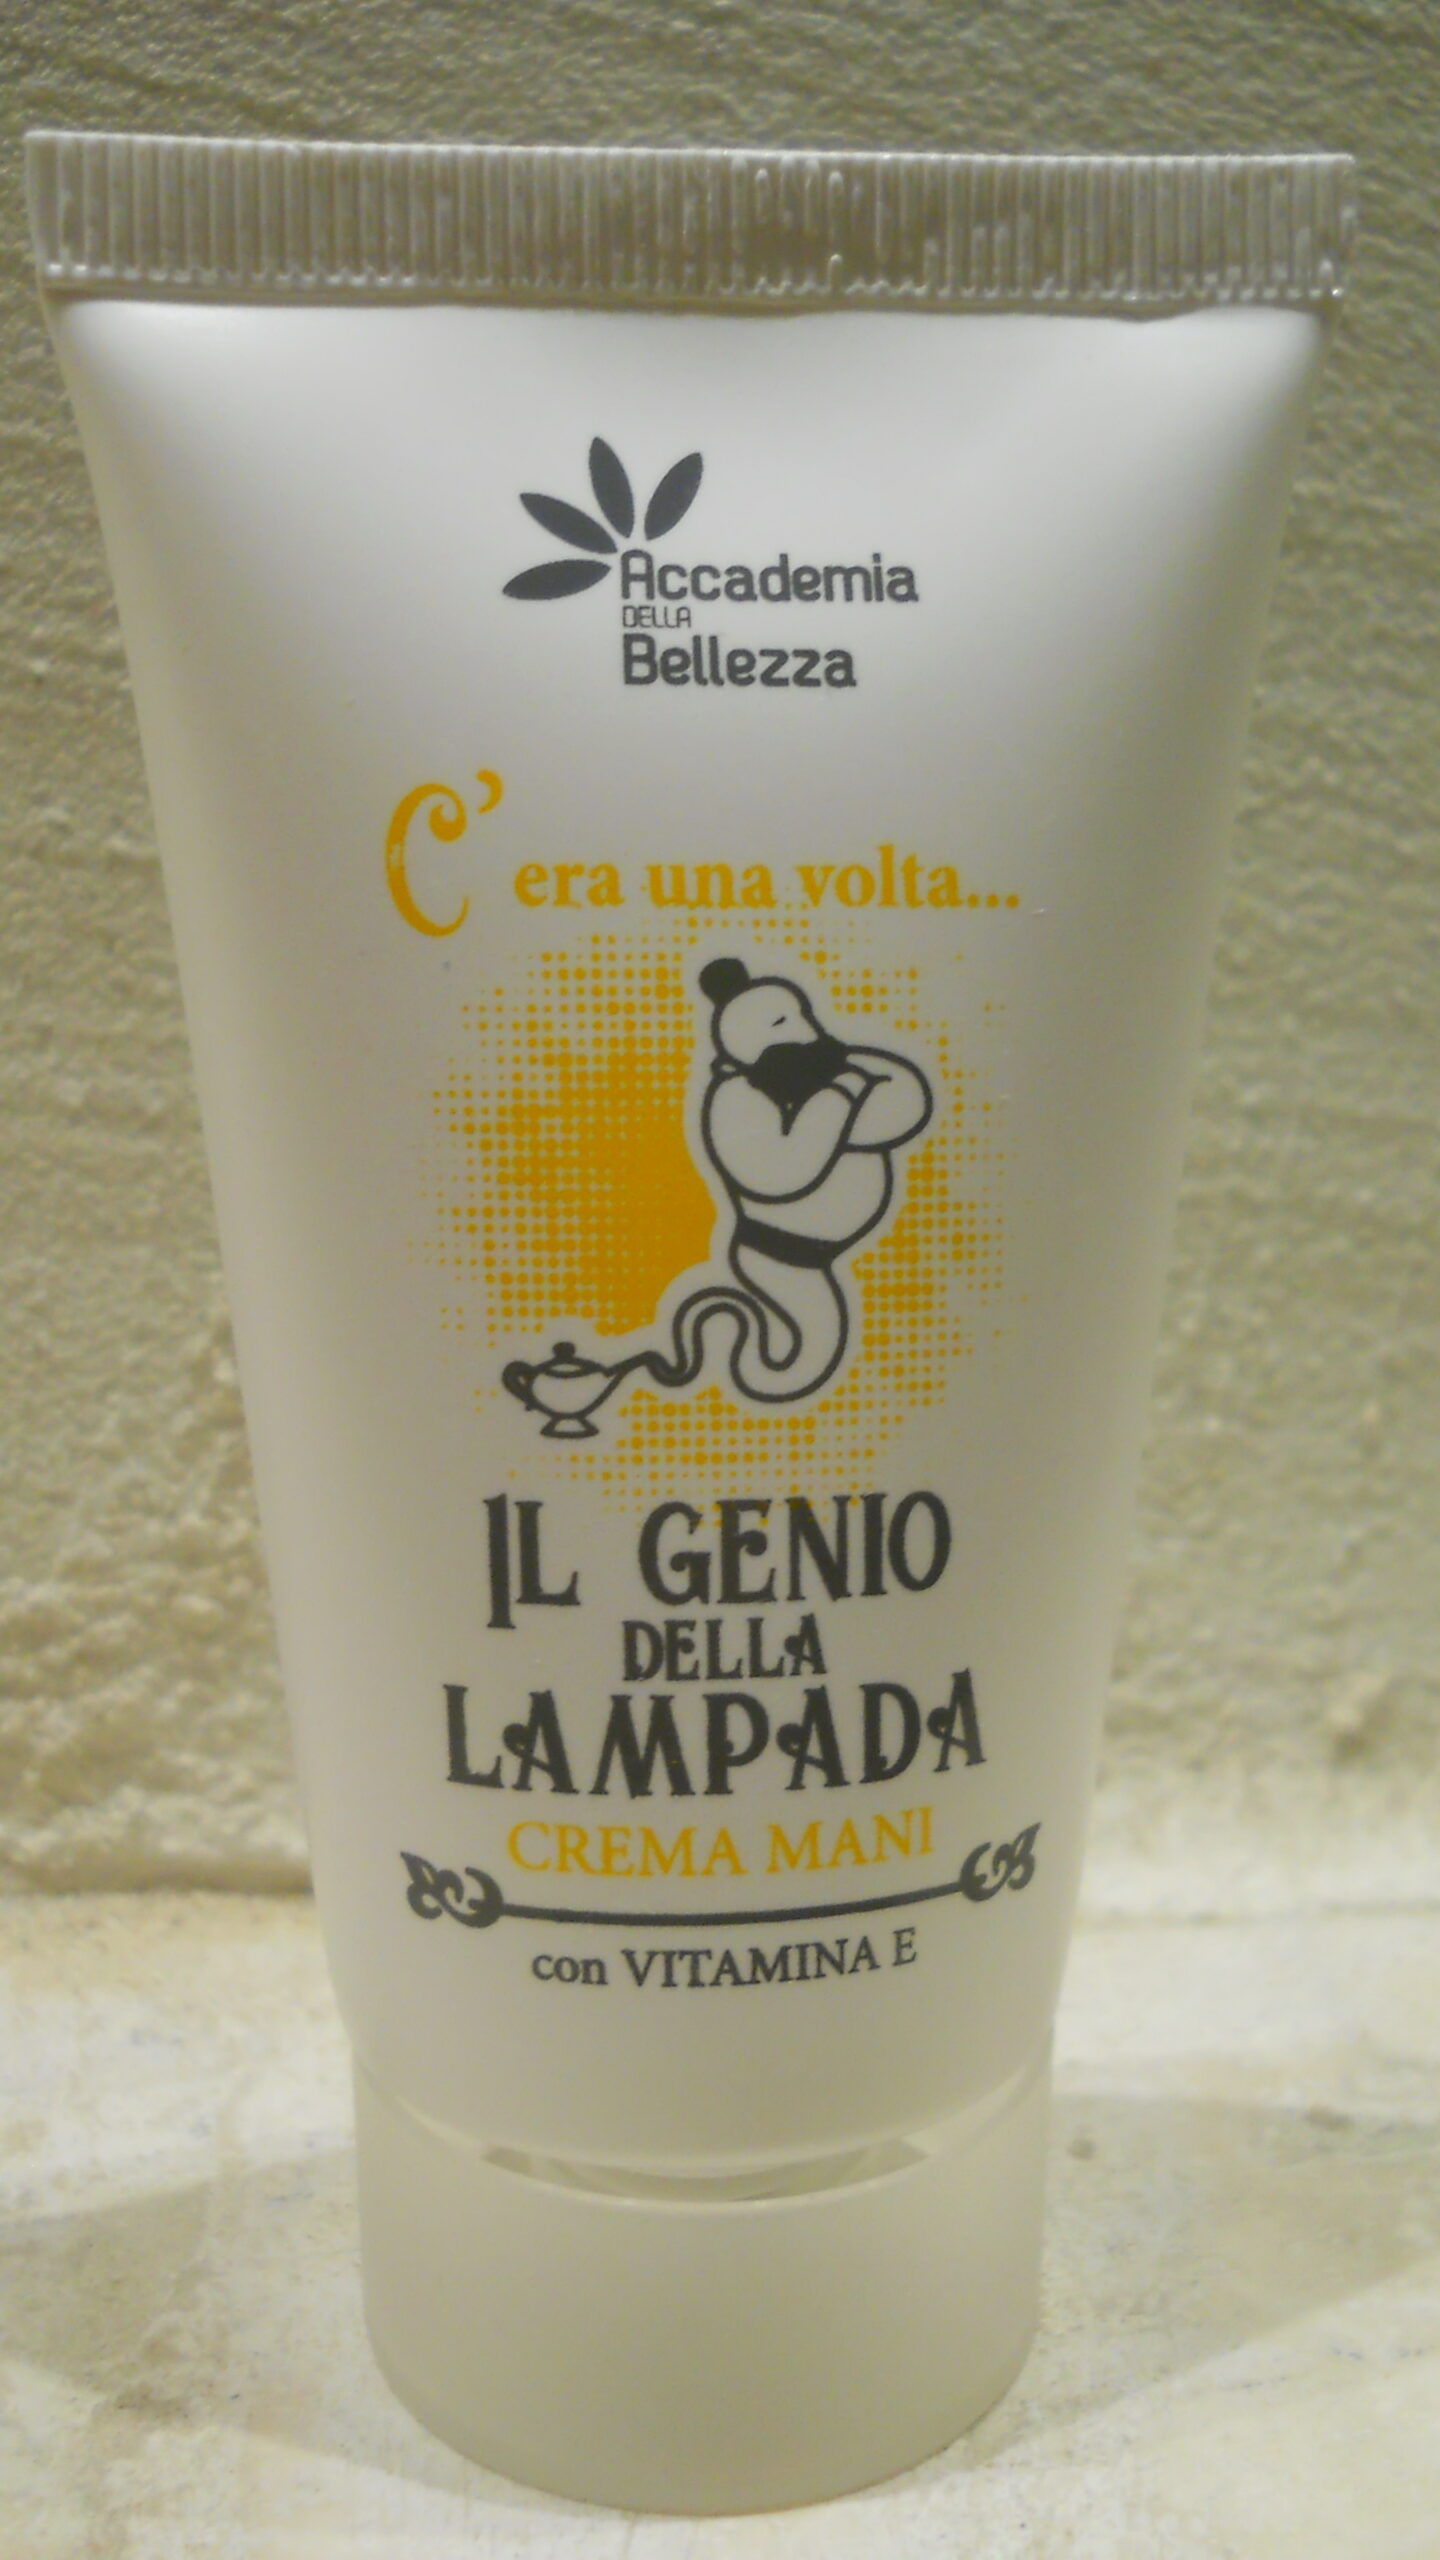 Featured image for “Crema mani "il genio della lampada"”